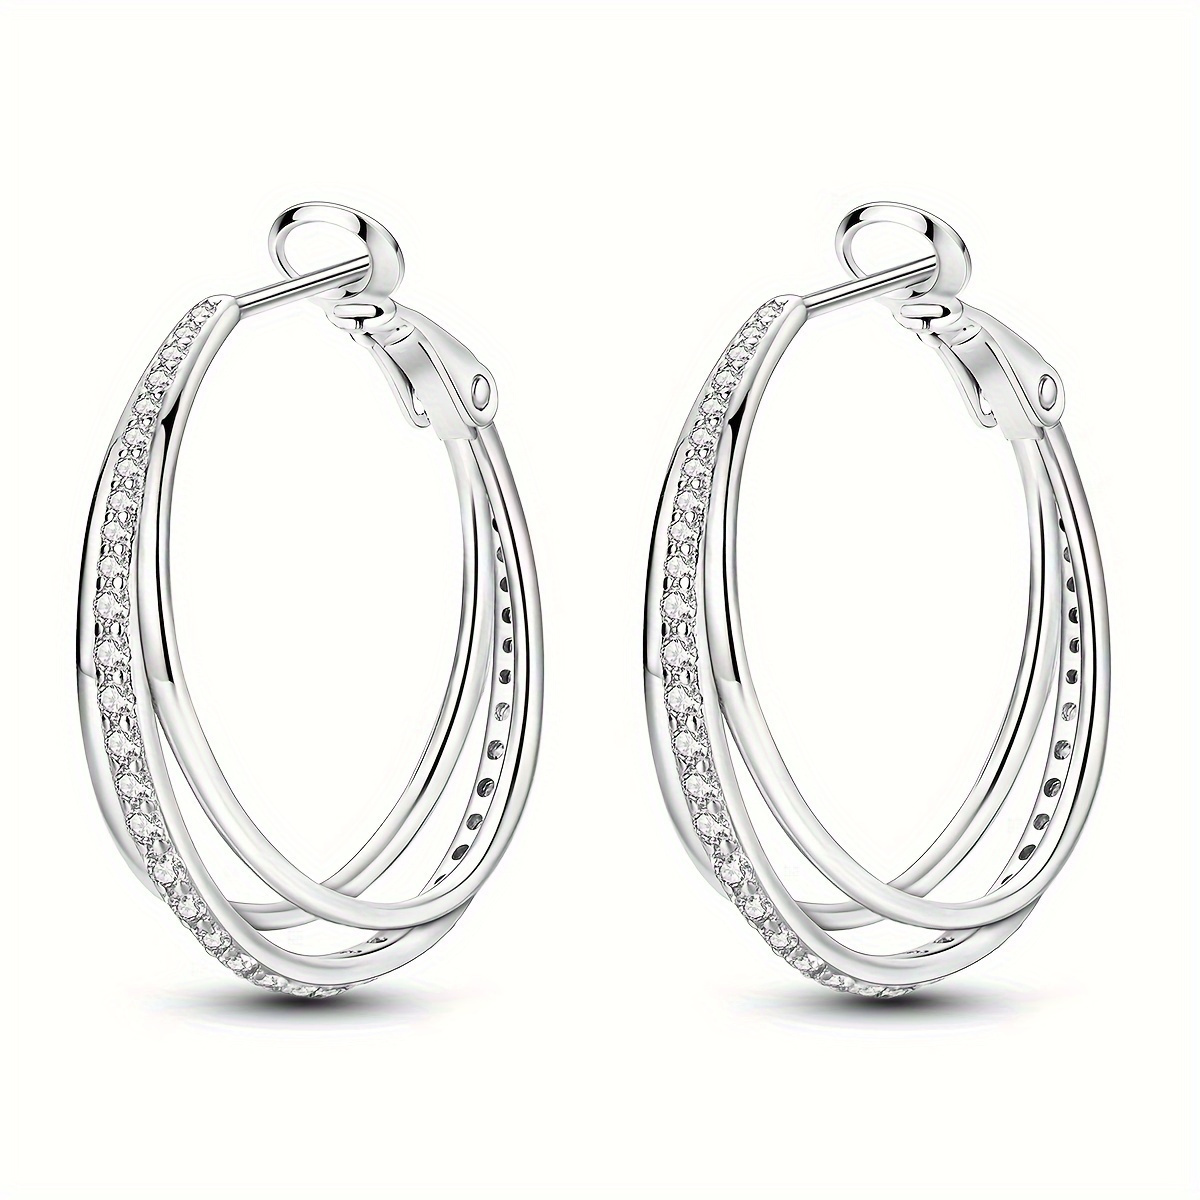 

1 Pair Of Earrings Weighs 6 Grams Sparkling Triple Hoop Women Earrings 925 Sterling Silver Hoop Earrings Engagement Party Wedding Jewelry Gift